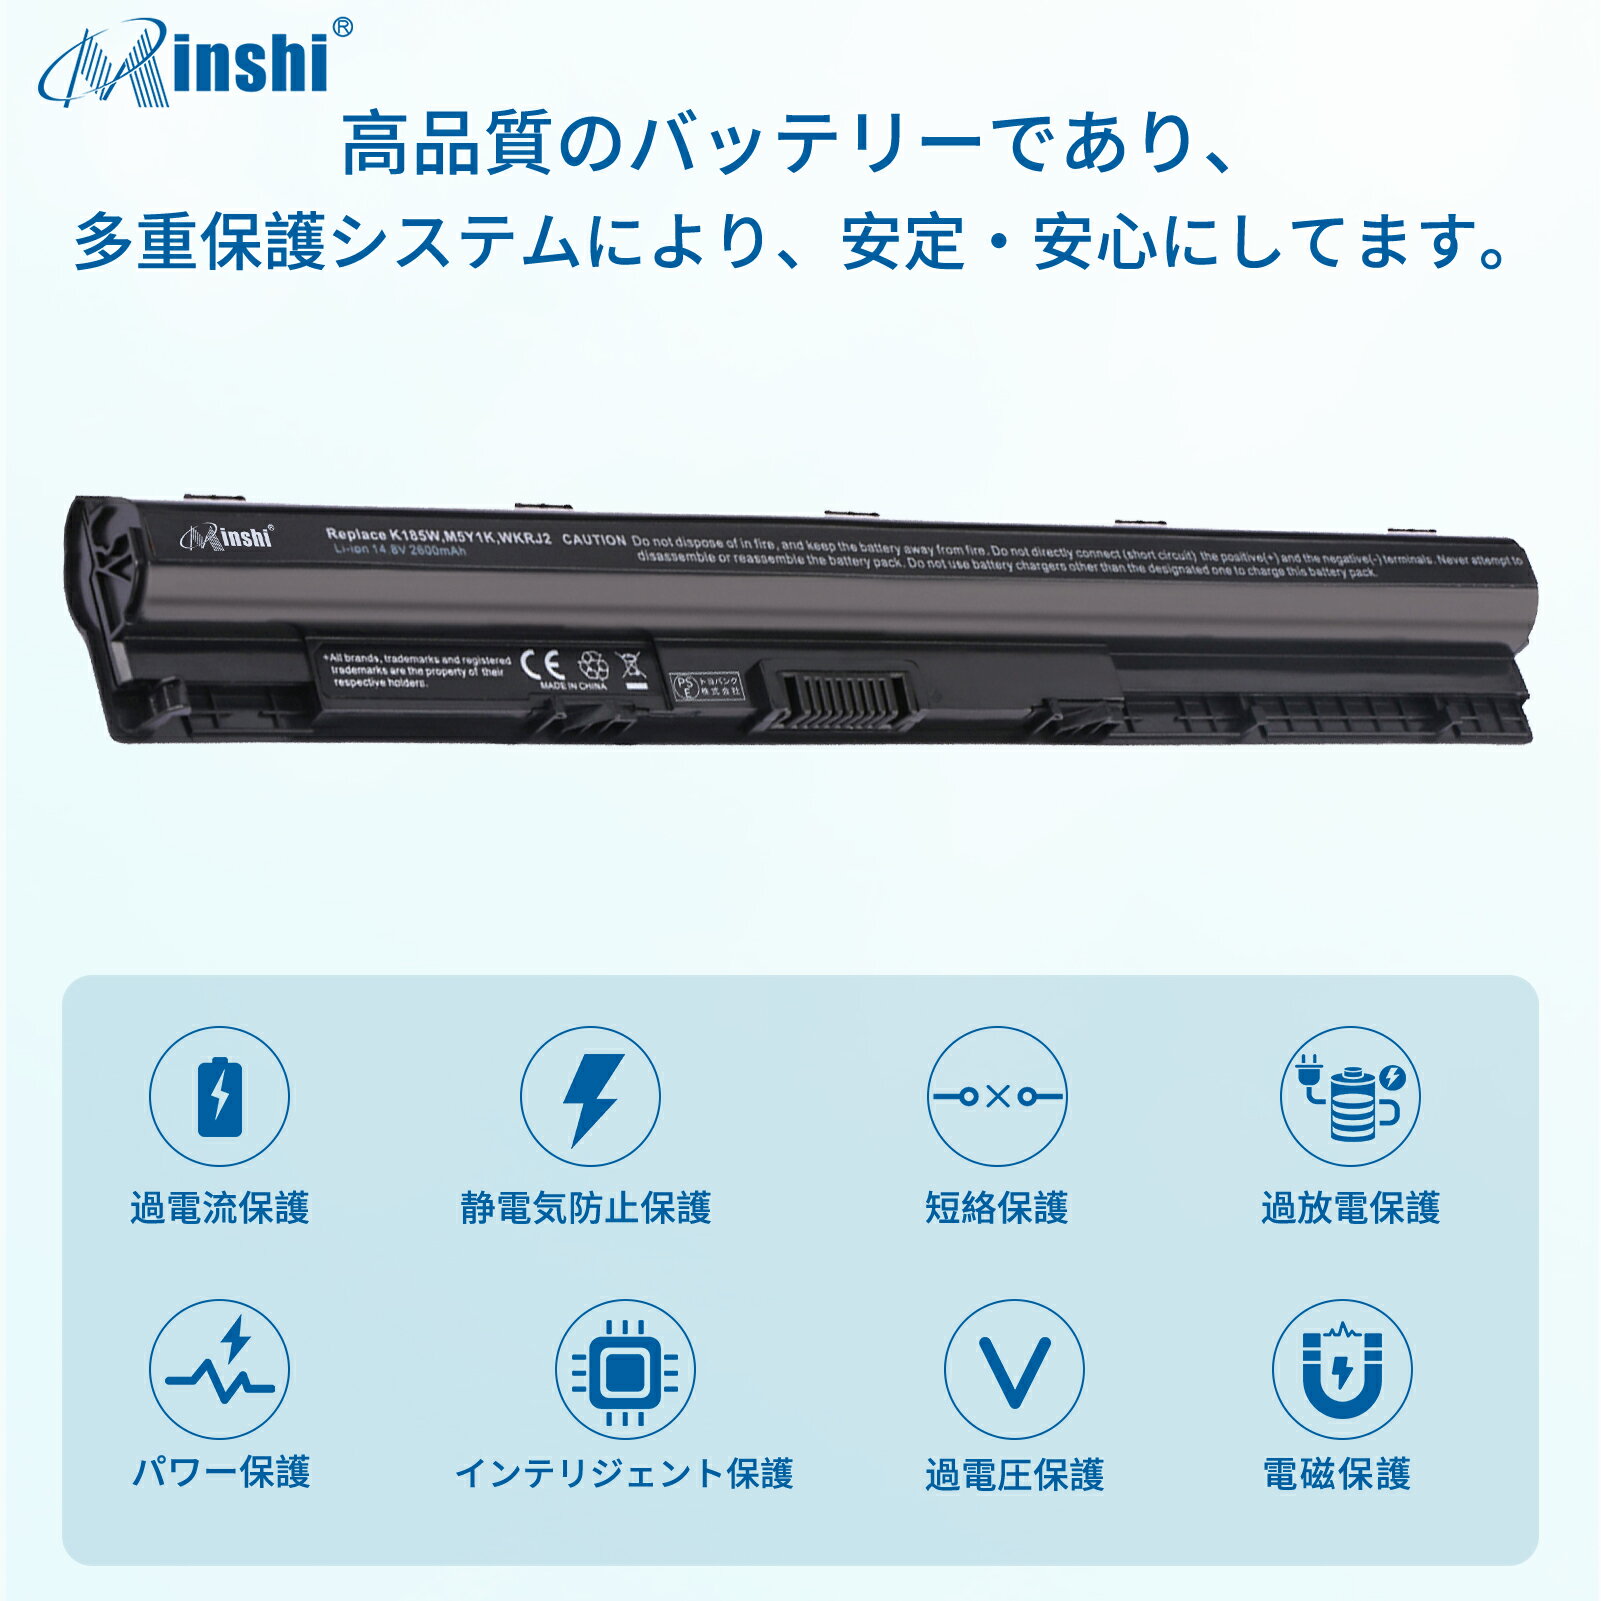 minshi 新品 Dell KI85W 互換バッテリー 対応 高品質交換用電池パック PSE認証 1年間保証 2600mAh 3